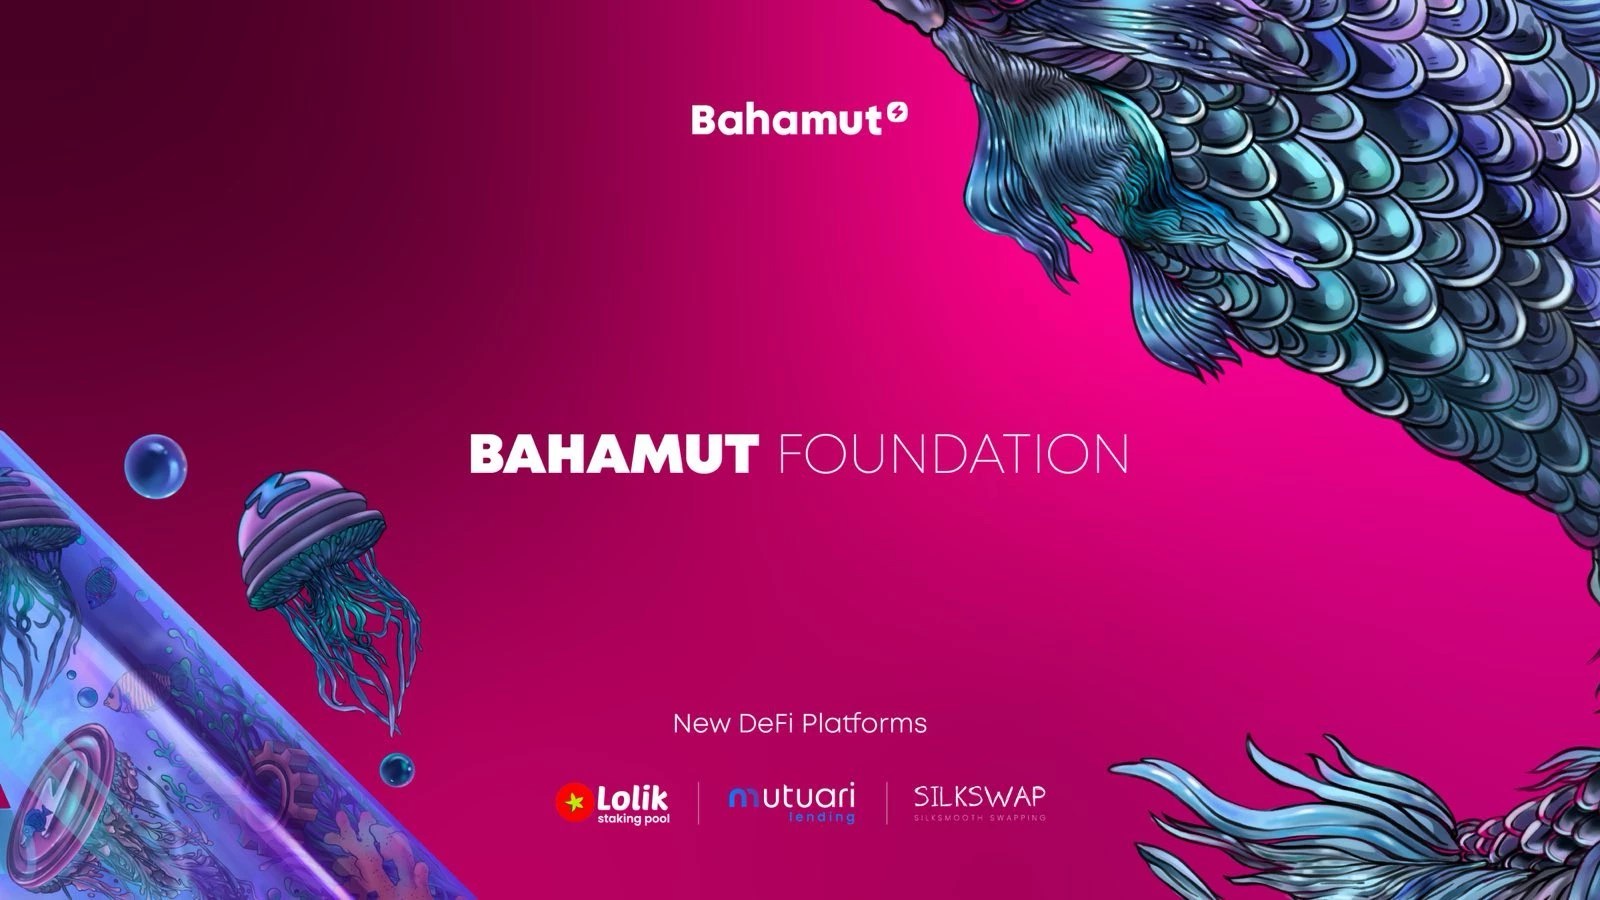 Bahamut Foundation, Bahamut üzerinde 3 DeFi projesinin başarıyla başlatıldığını ve Bahamut Arena'nın ilk kazananlarının onaylanan listesini duyurdu